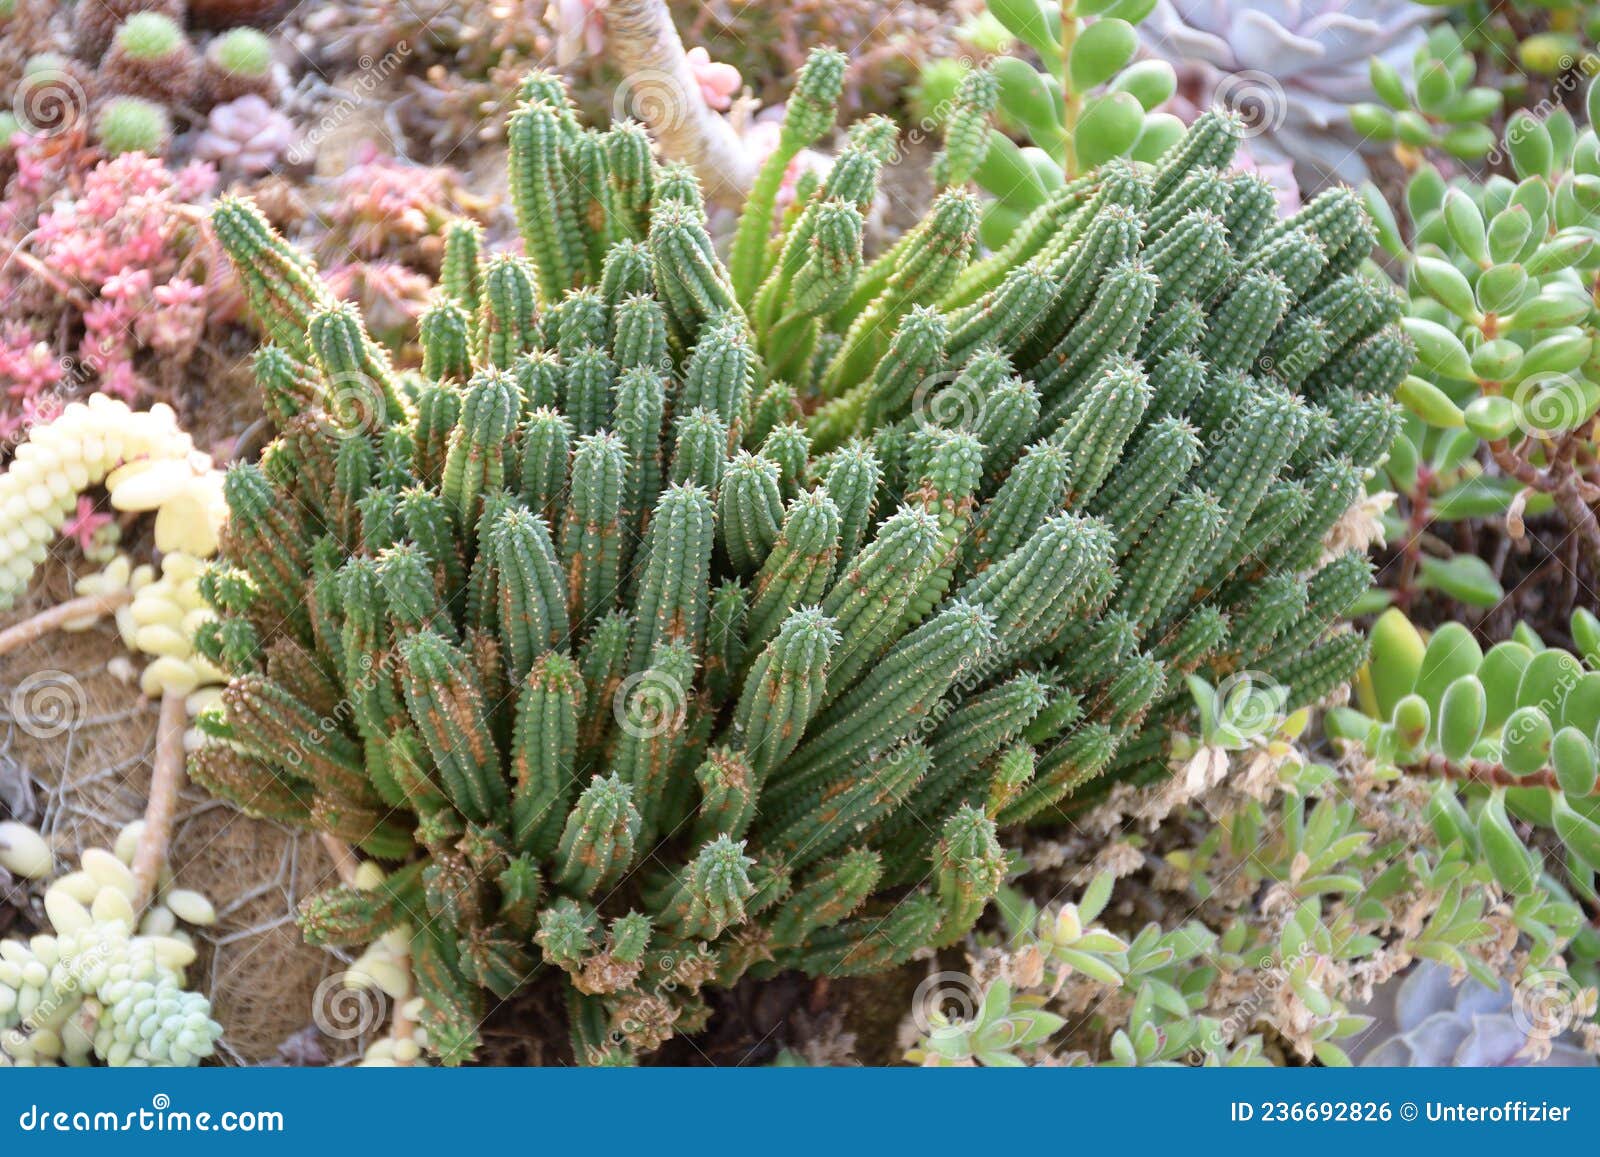 euphorbia mammillaris l or euphorbiaceae or cockscrew cactus plant